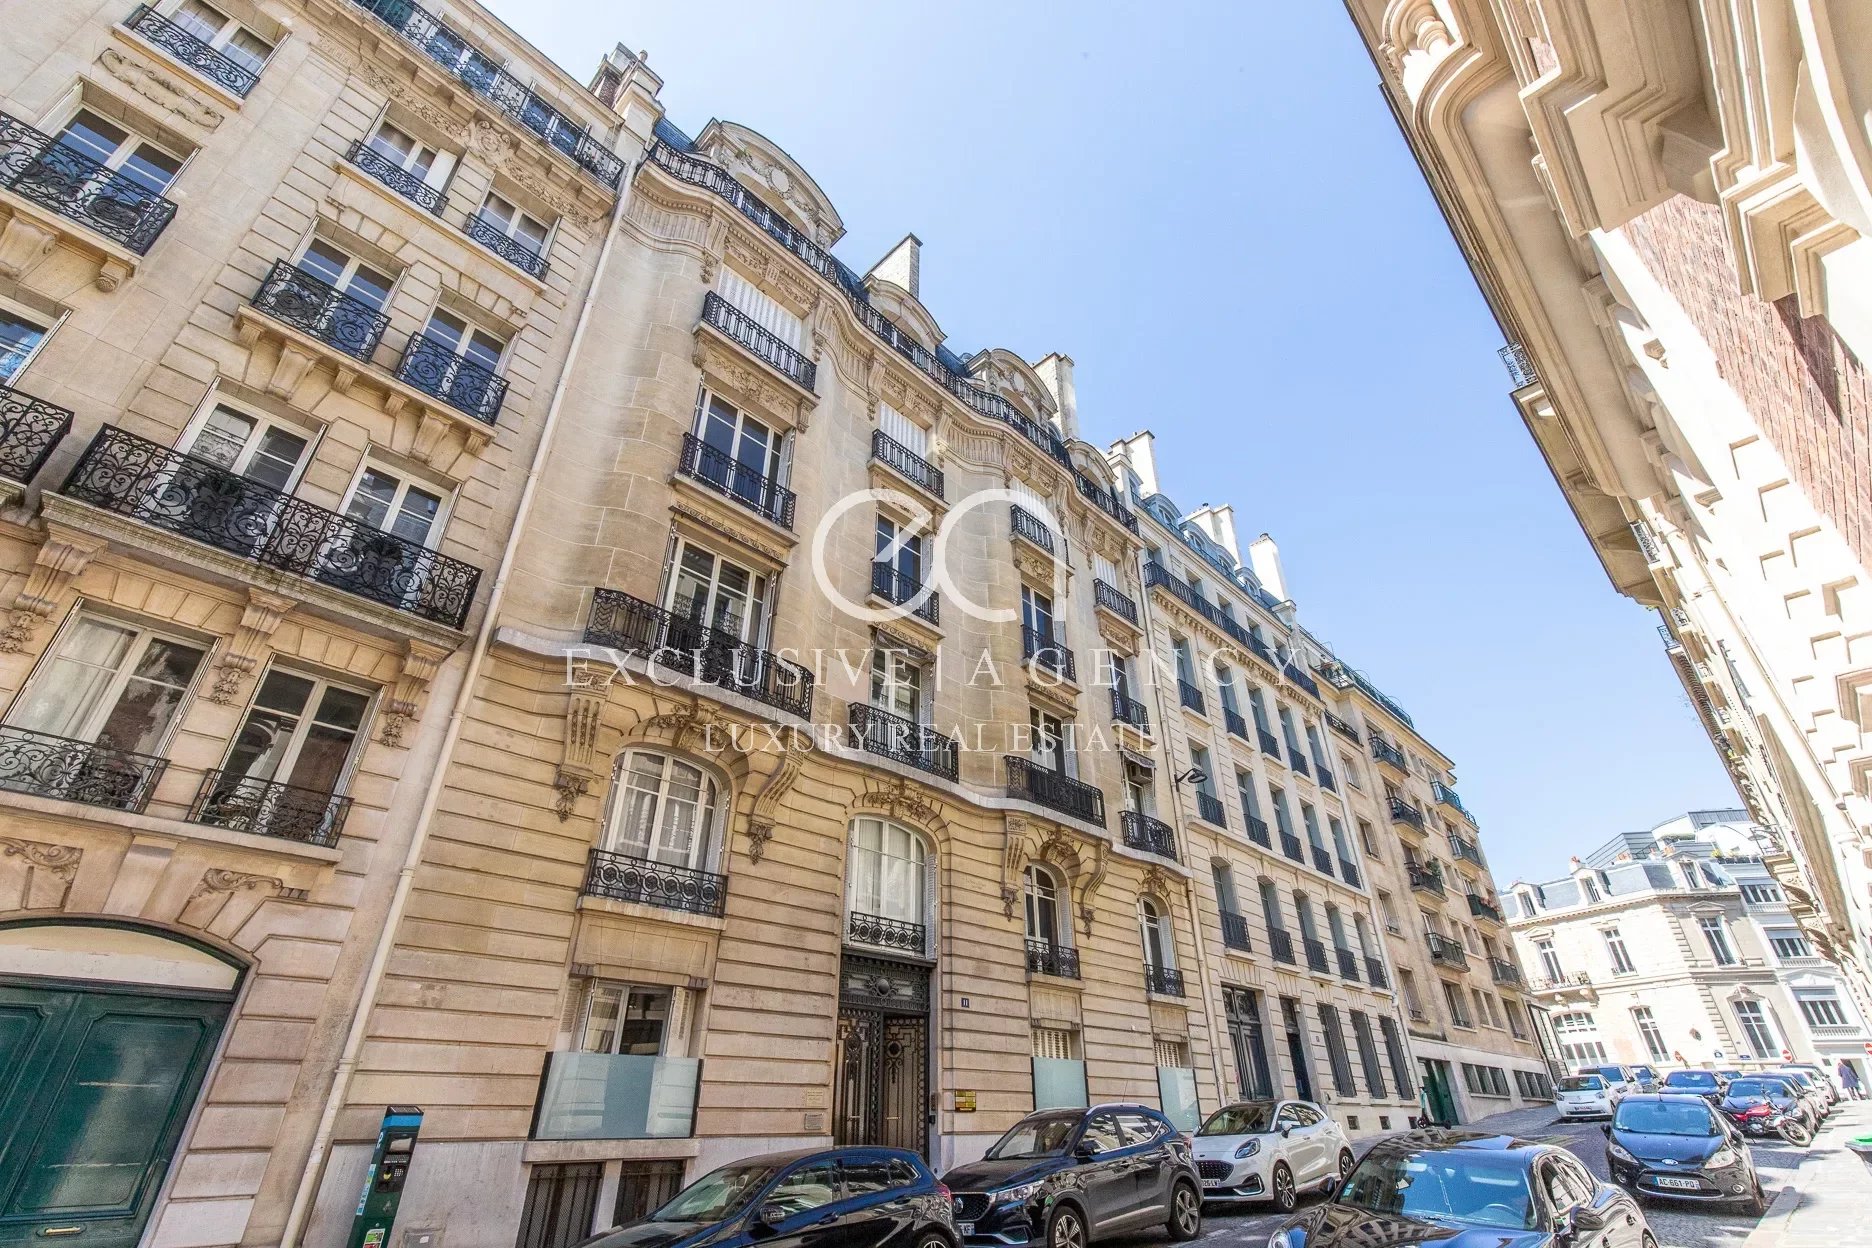 Paris Elegante Wohnung mit 193m2 Wohnfläche in eine